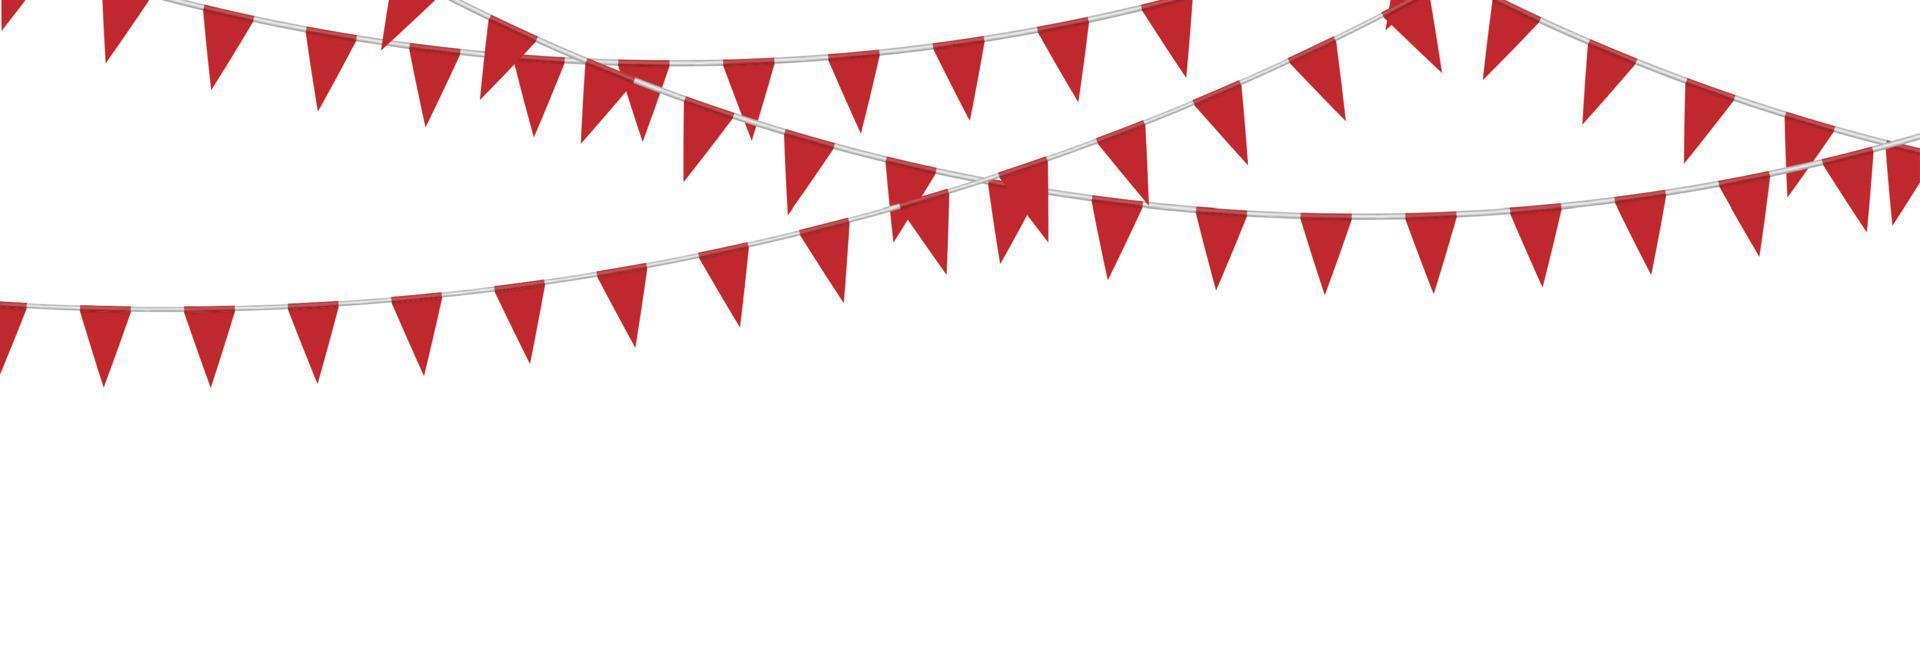 bandeiras de festa de estamenha vermelha isoladas no fundo branco, ilustração vetorial vetor